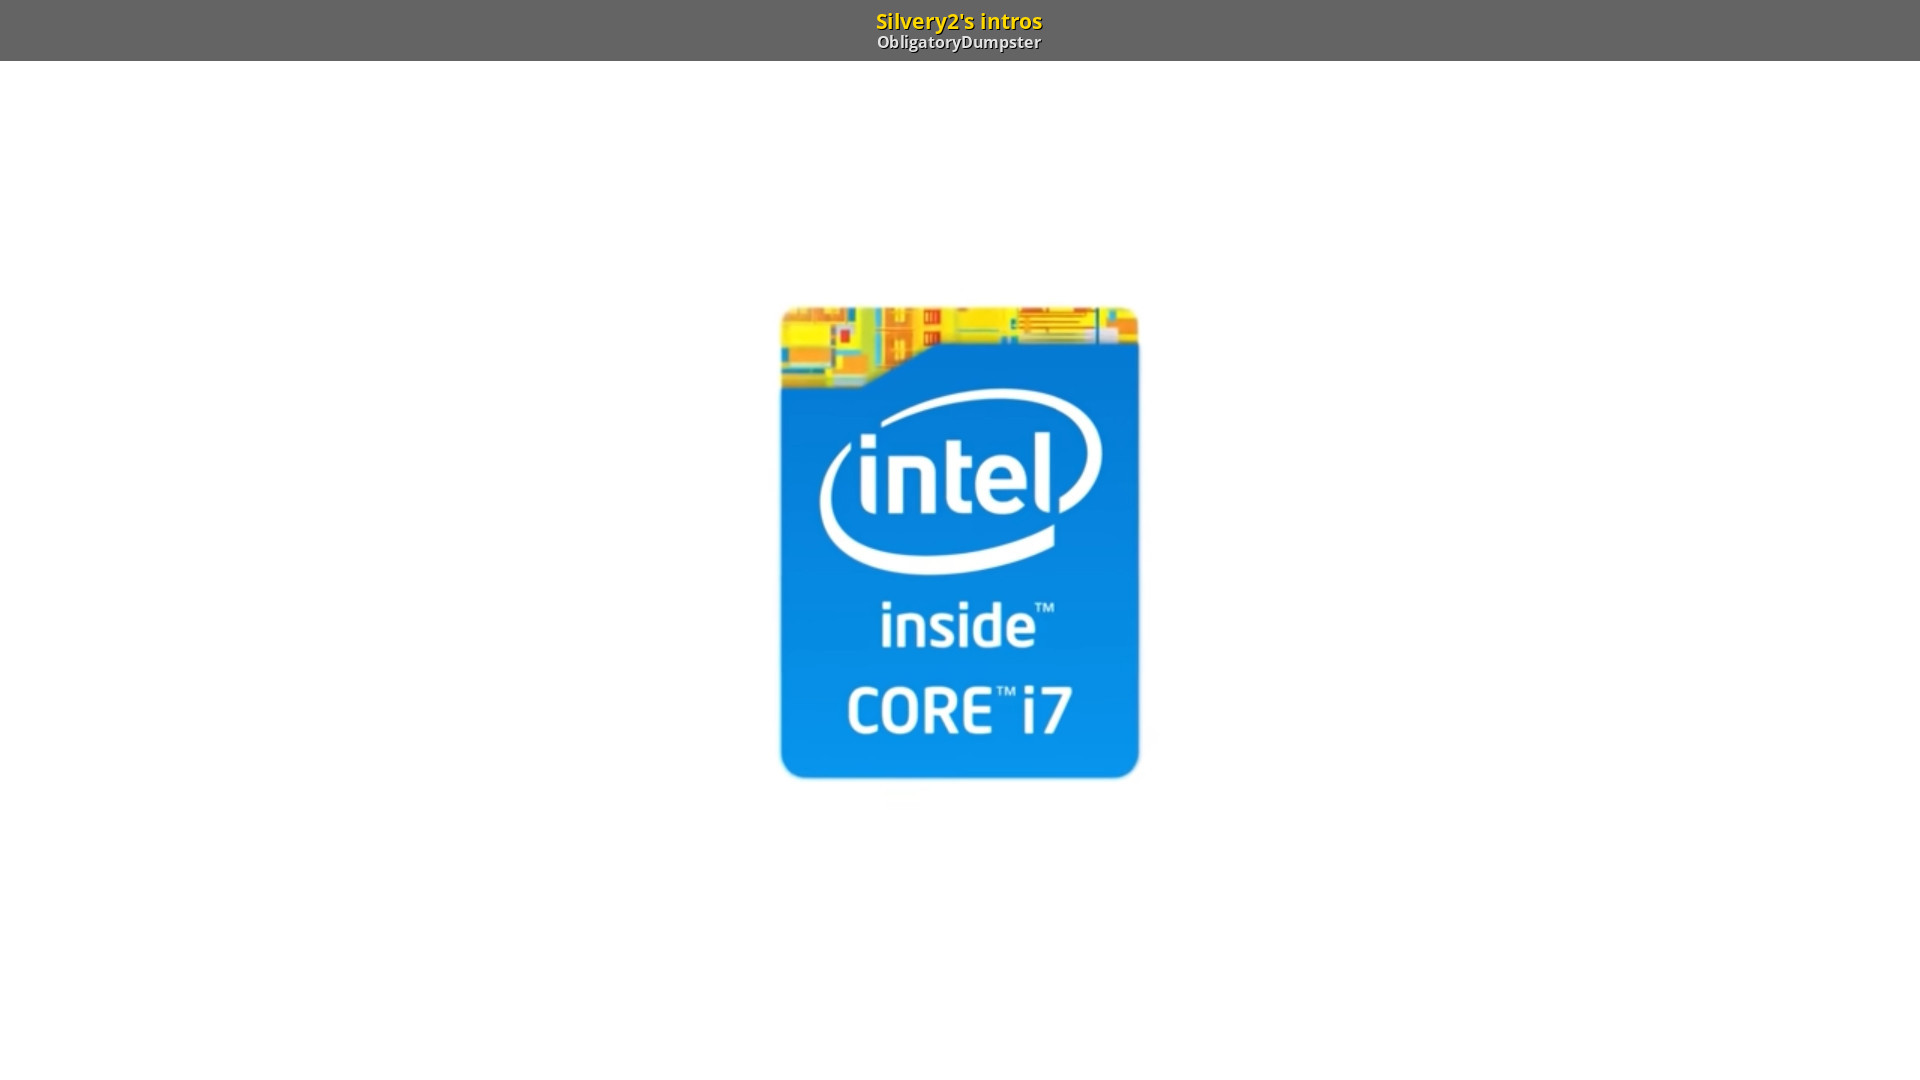 Фитограном 7 в 1 купить. Процессор Intel Core i7 logo. Наклейка Intel Core i7 inside. Intel Core i5 logo. Intel inside Core i7 logo.